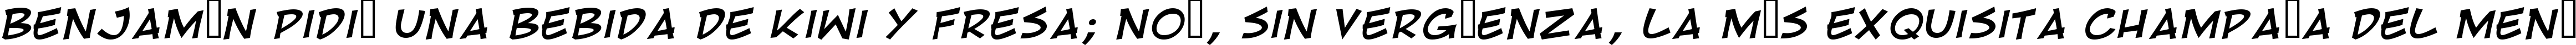 Пример написания шрифтом RivenShield  Italic текста на испанском